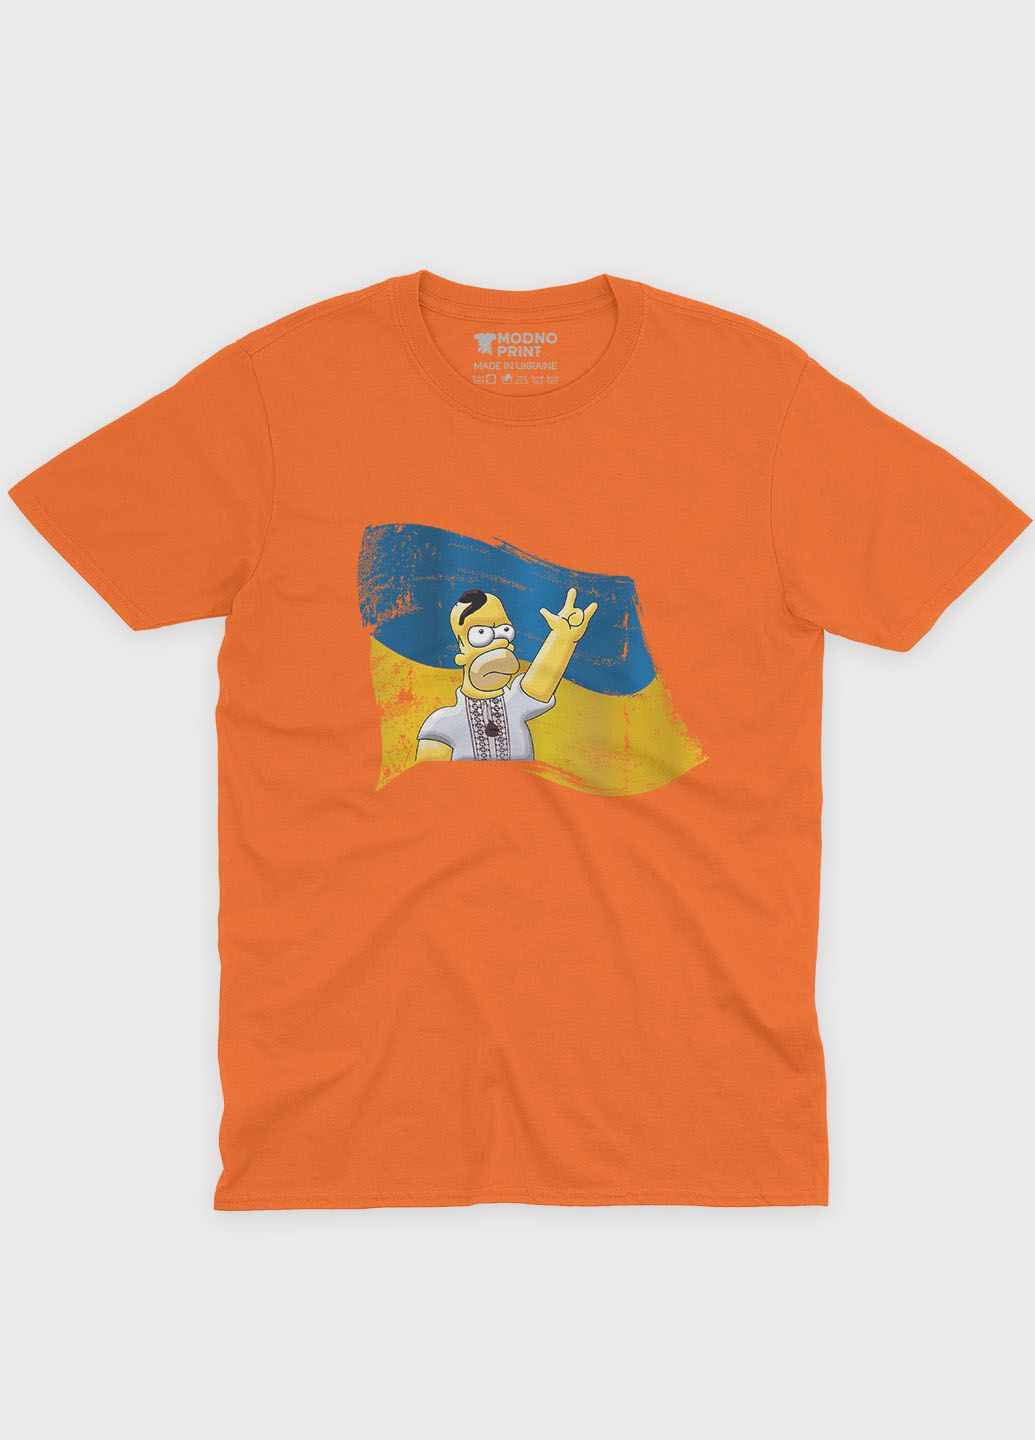 Оранжевая демисезонная футболка для мальчика с патриотическим принтом гомер (ts001-3-ora-005-1-068-b) Modno